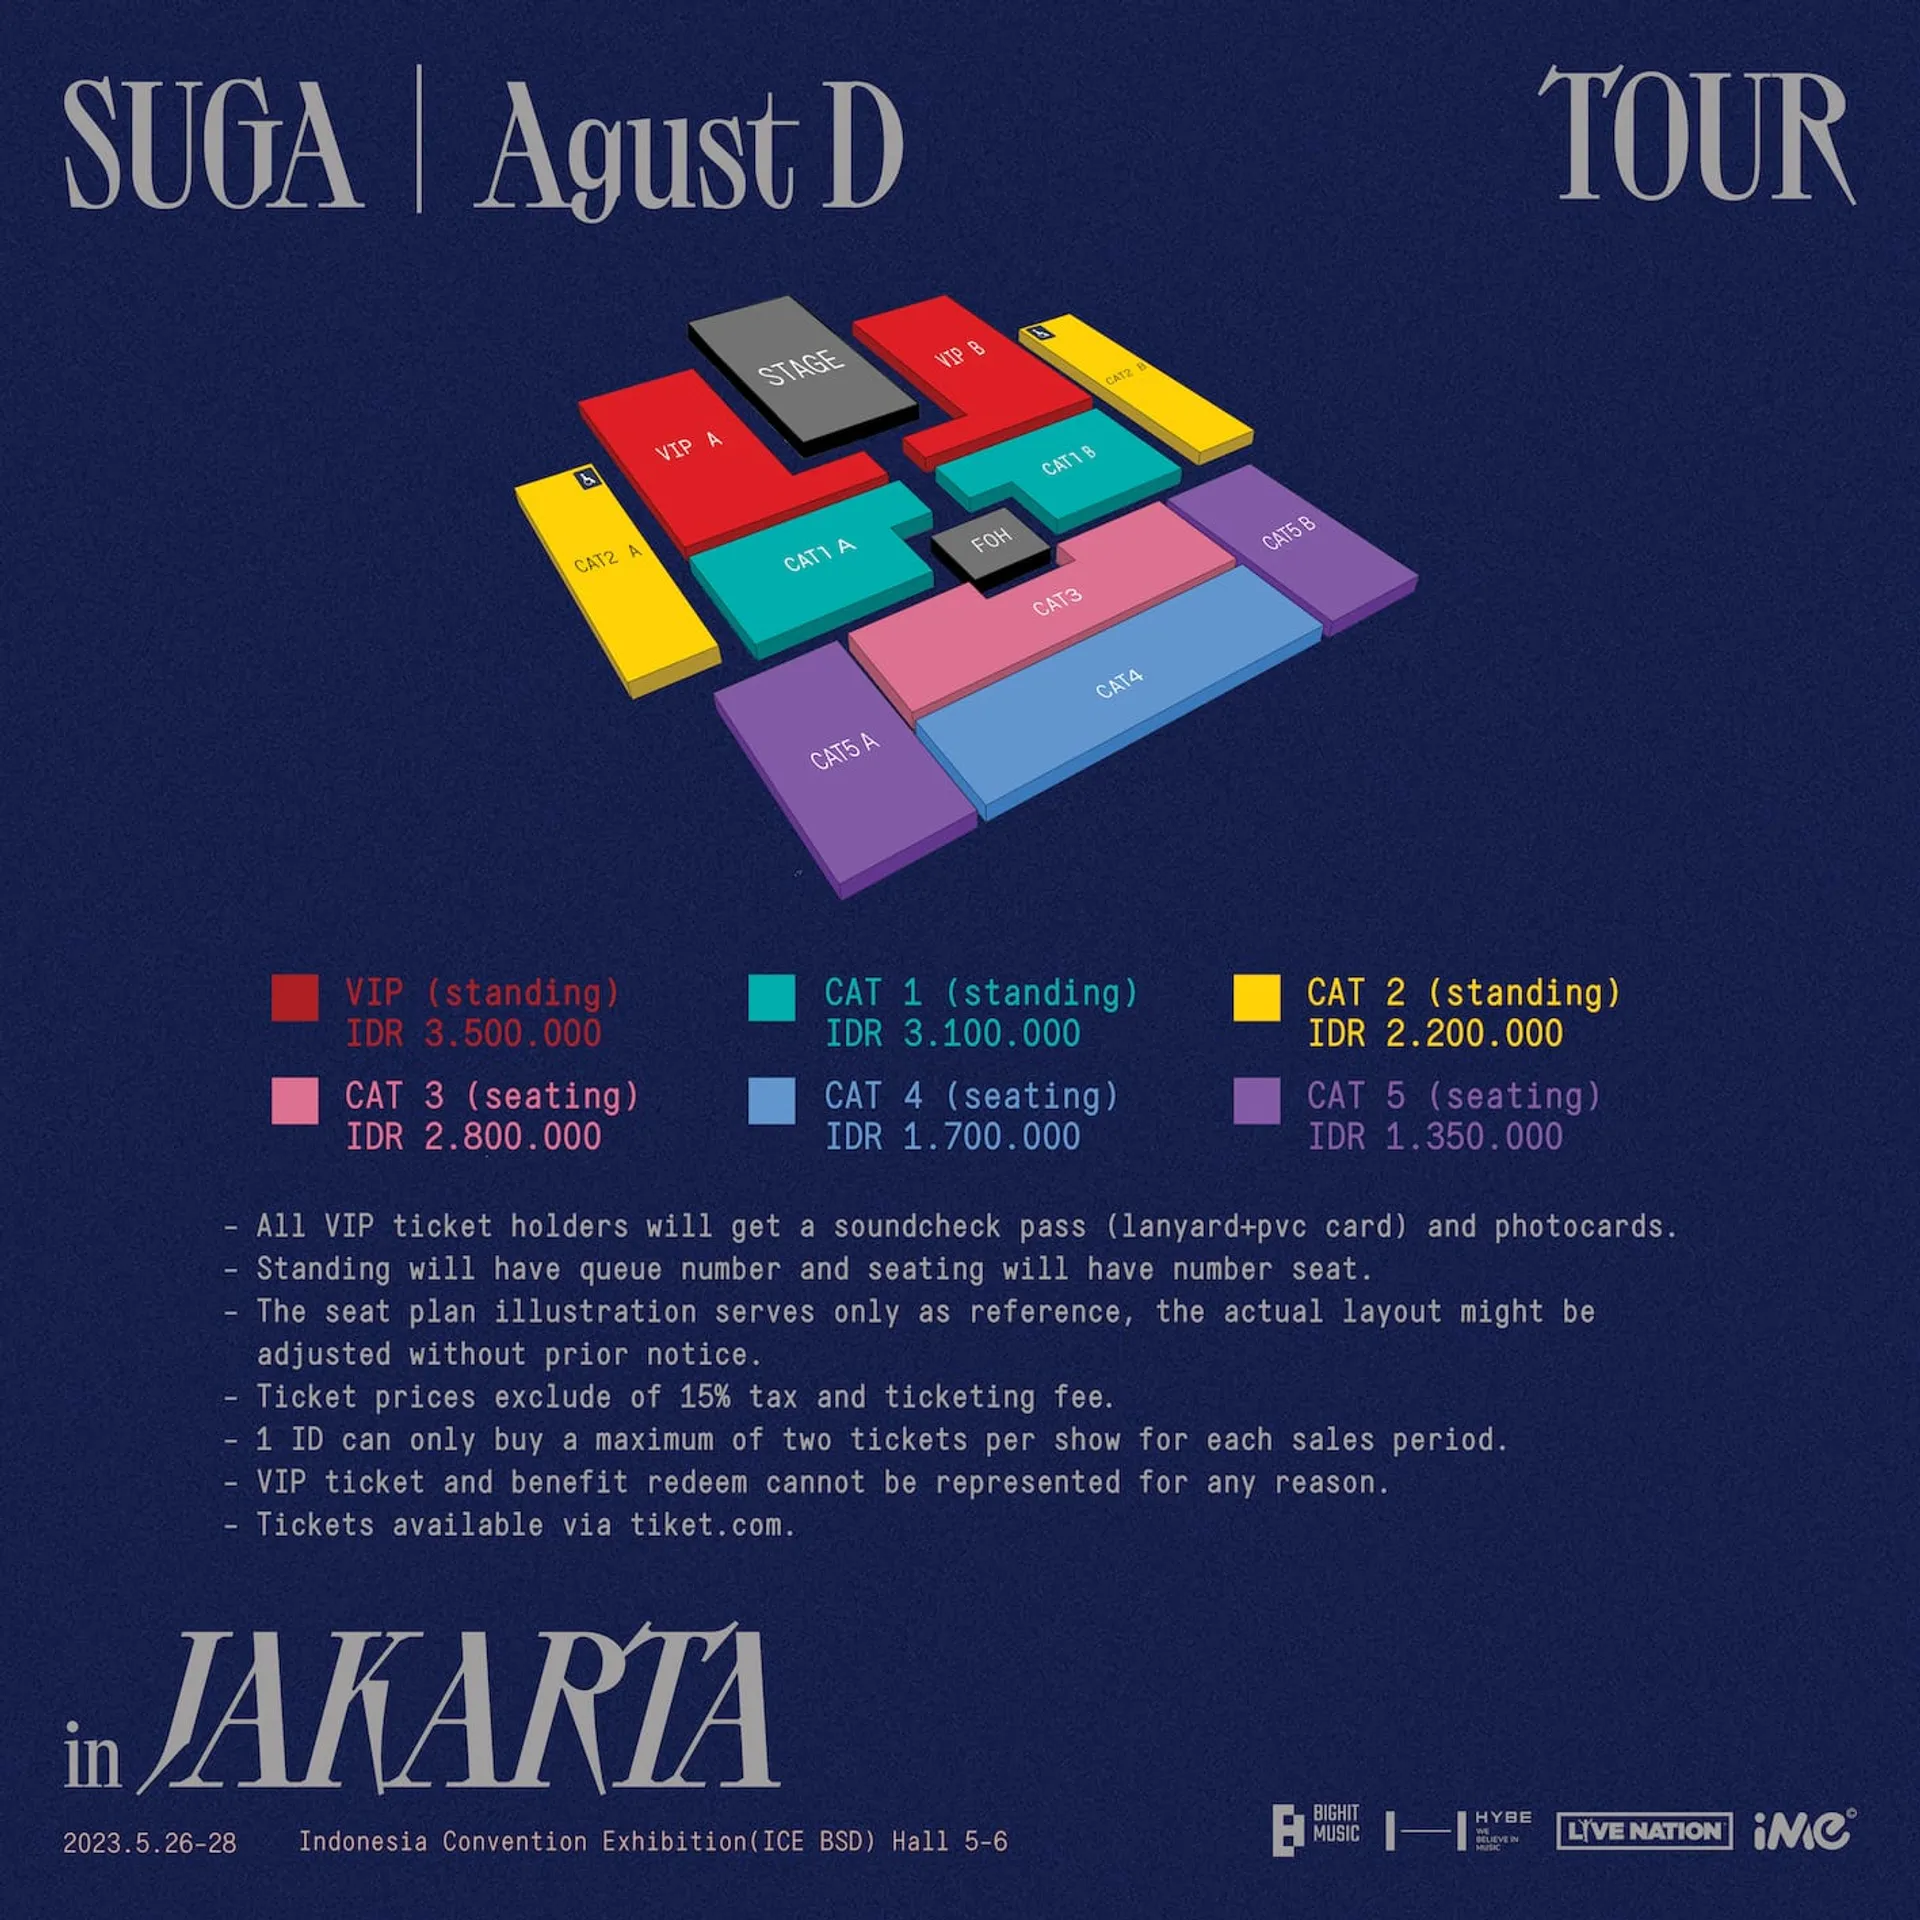 Tiket Konser SUGA di Indonesia Dijual Mulai 27 Maret 2023